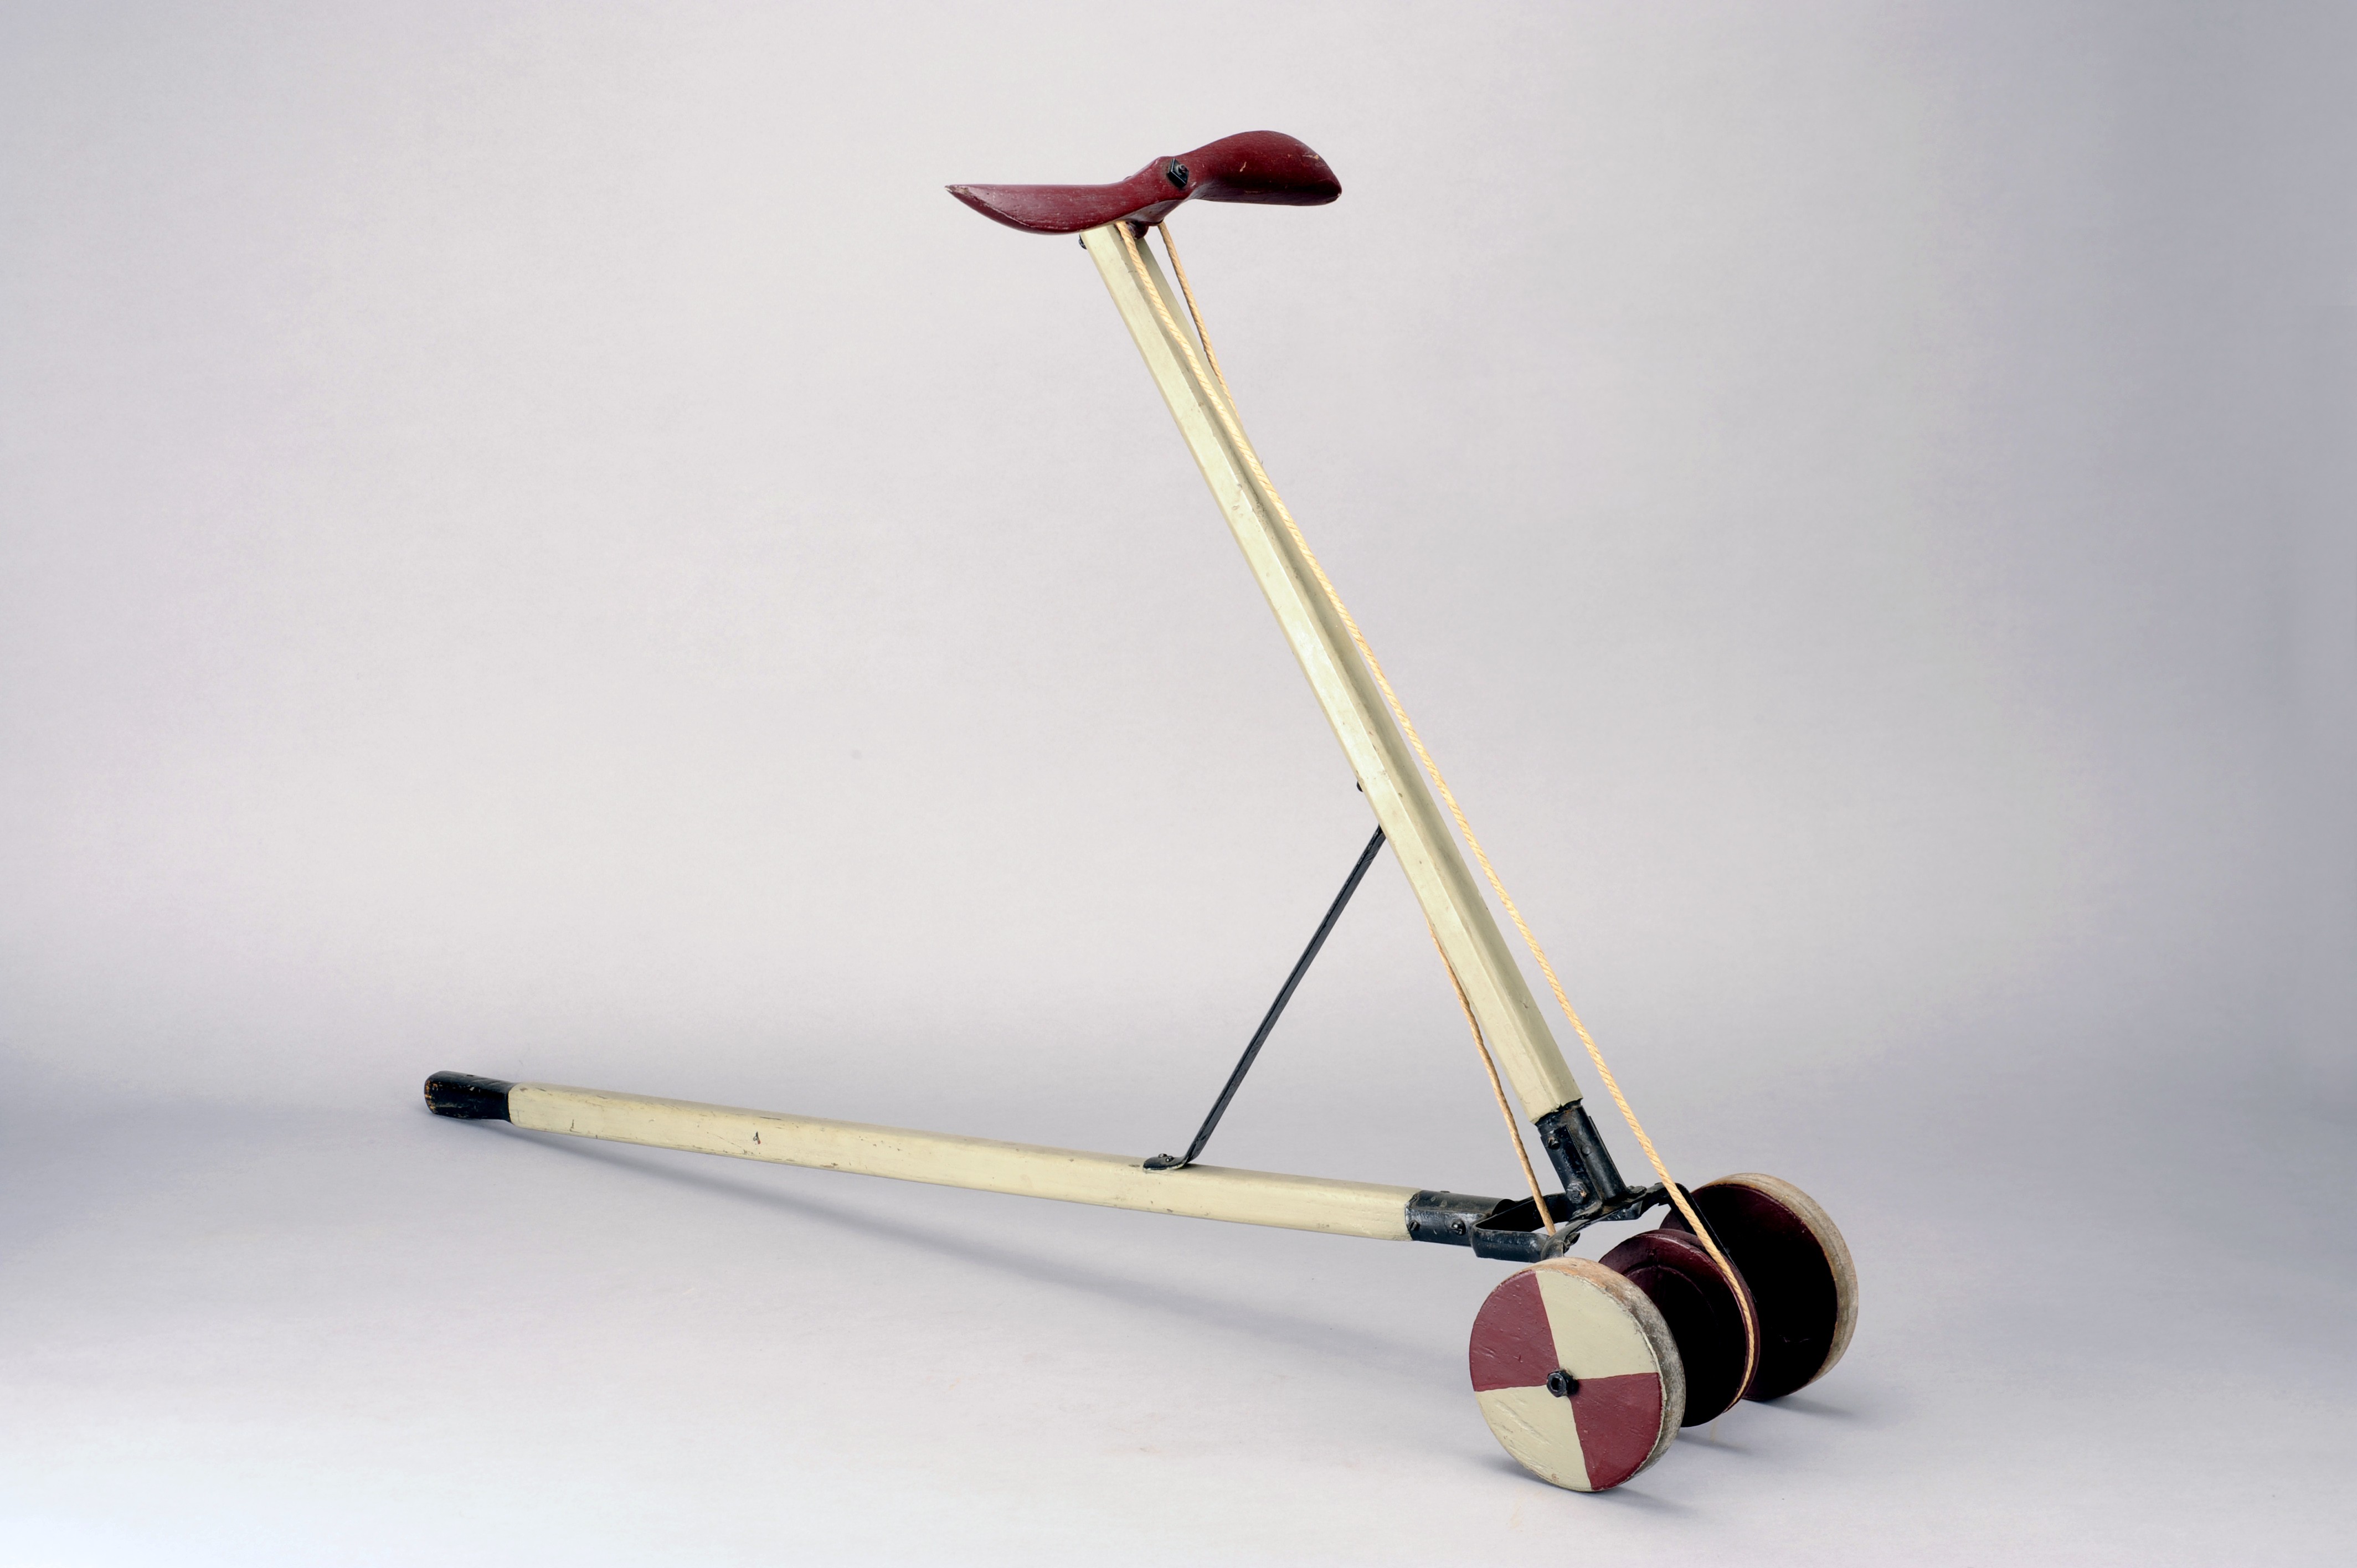 Grau gestrichenes Laufrad mit rotem Propeller aus Holz